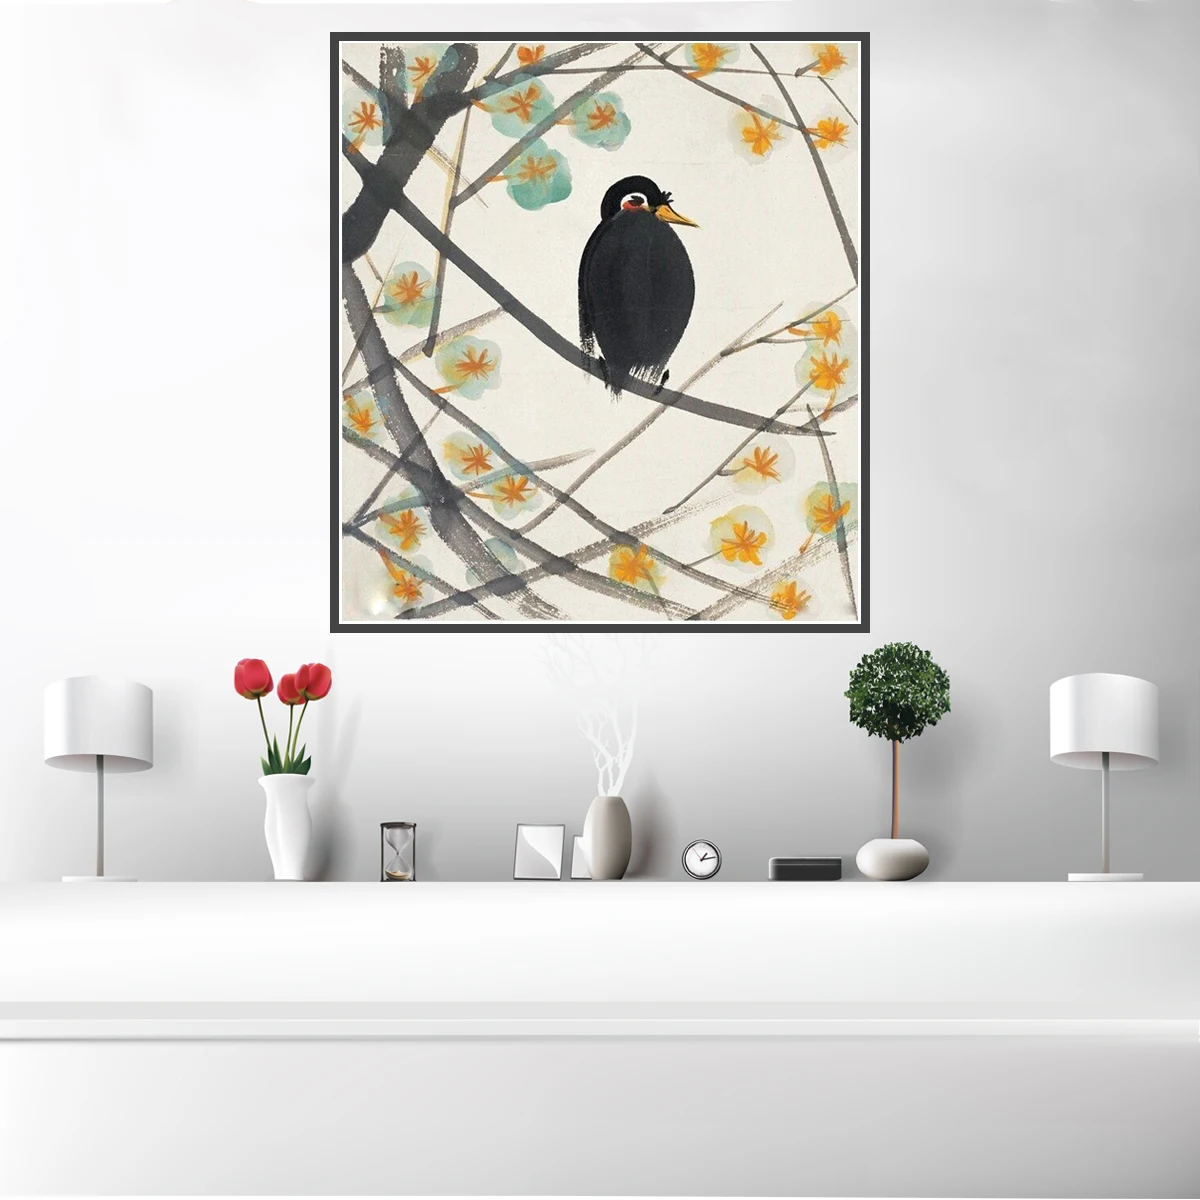 Постер на холсте с изображением совы и птиц настенное украшение для